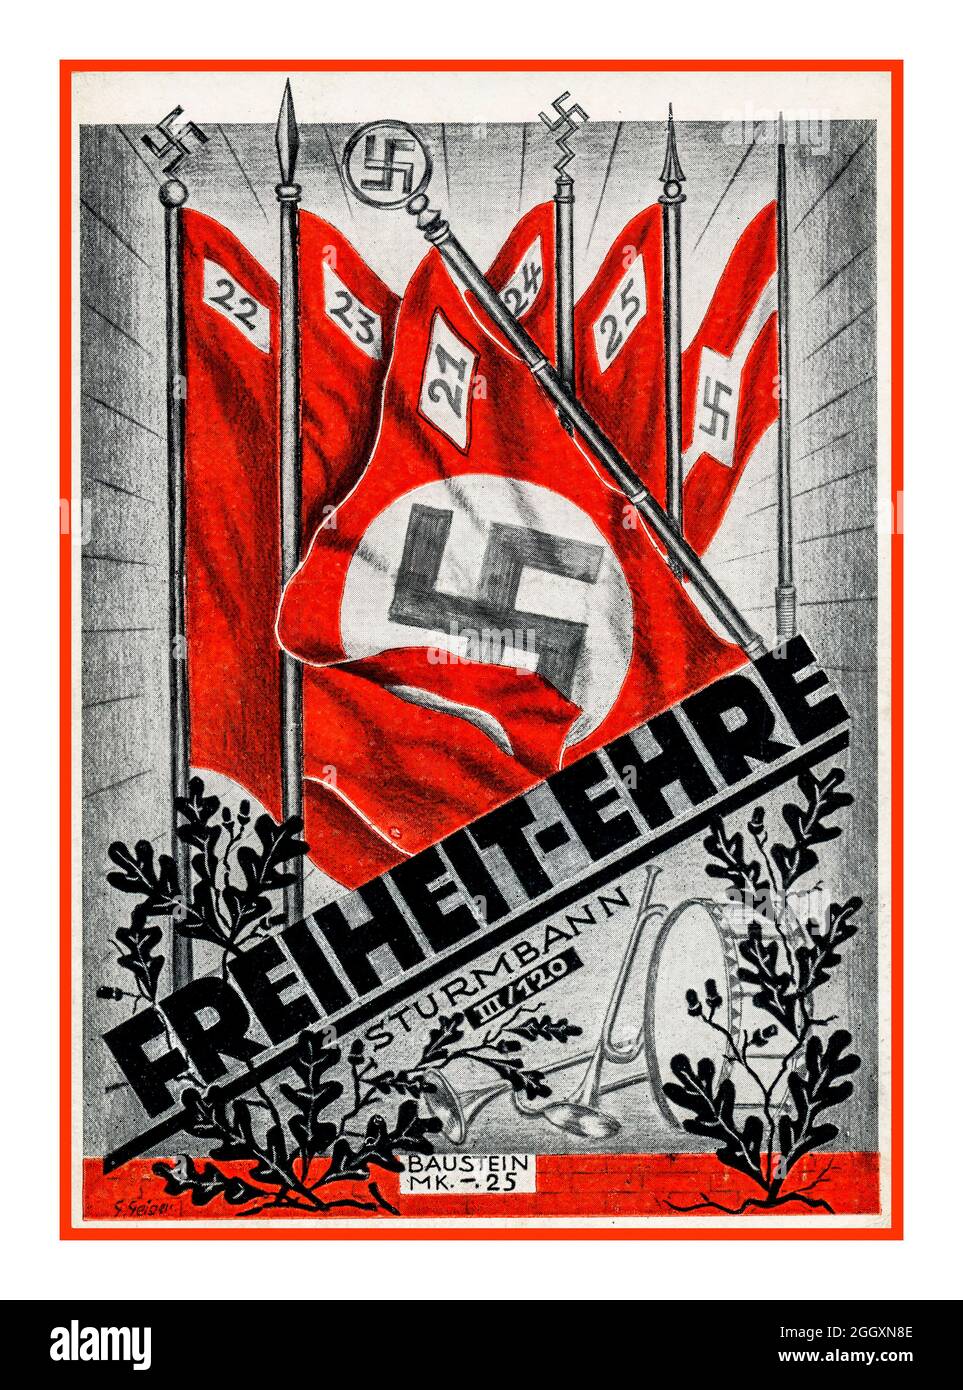 Affiche de propagande nazie : 'Freiheit-Ehre' / liberté et honneur : de sa Sturmbann III Swastika drapeau couleurs jour Berlin Allemagne nazie Banque D'Images